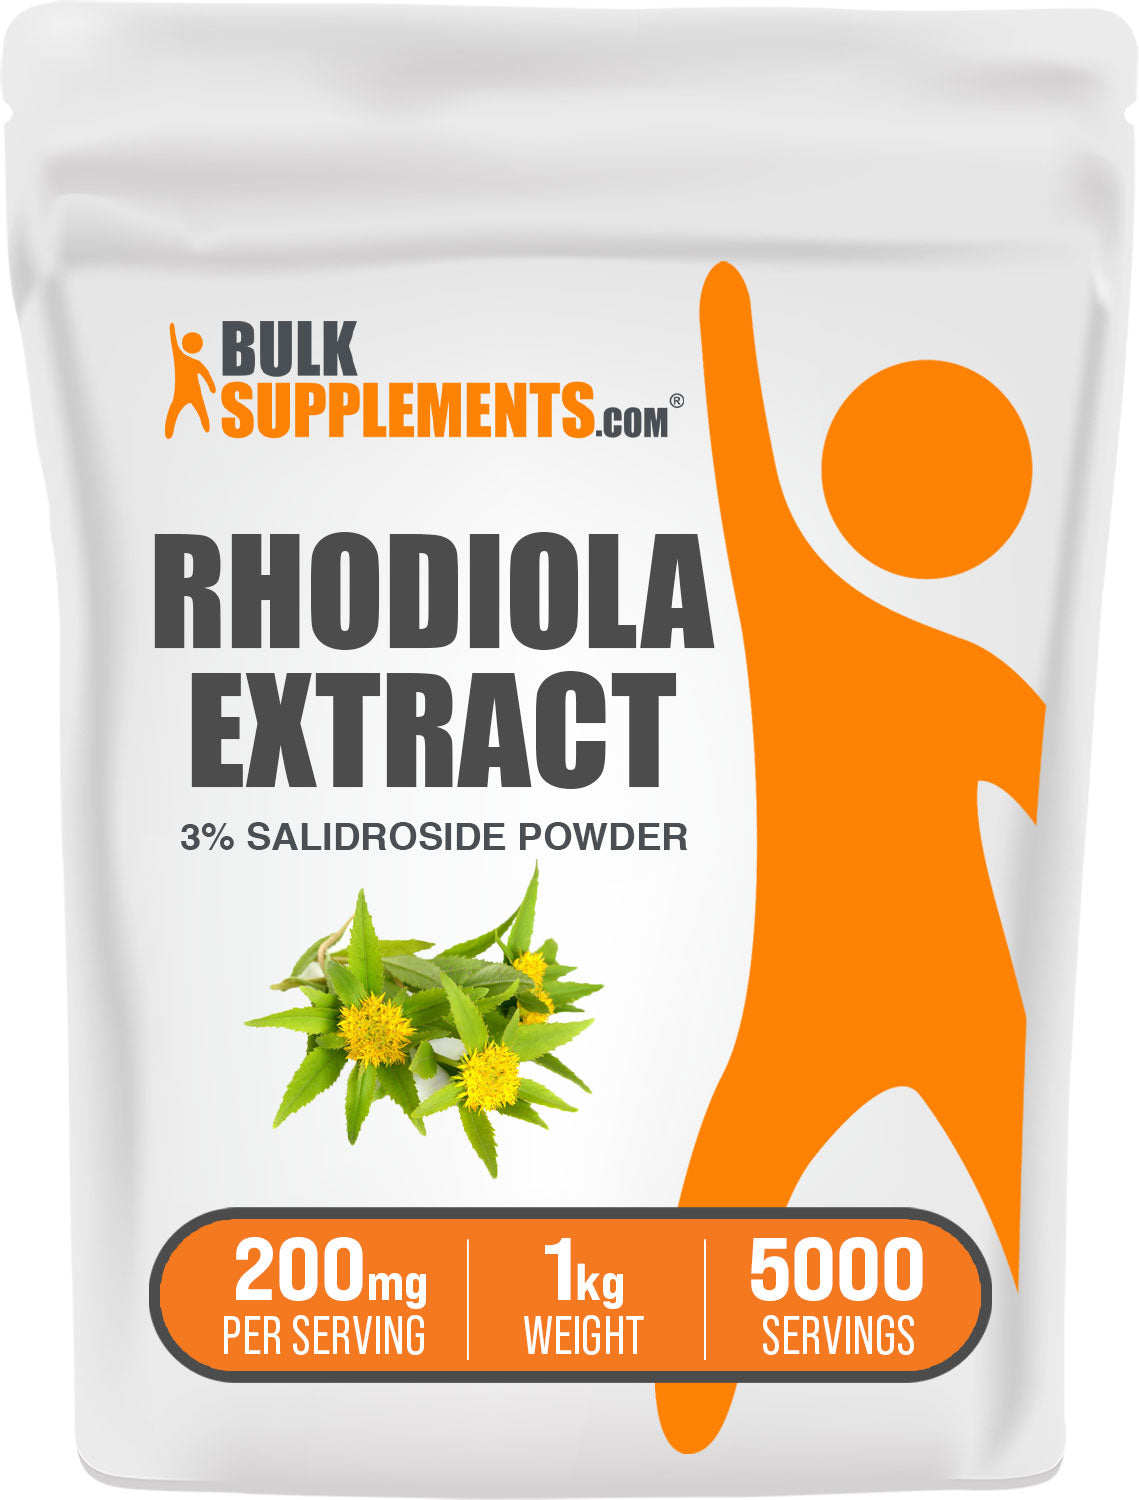 Rhodiola Salidroside 1kg bag